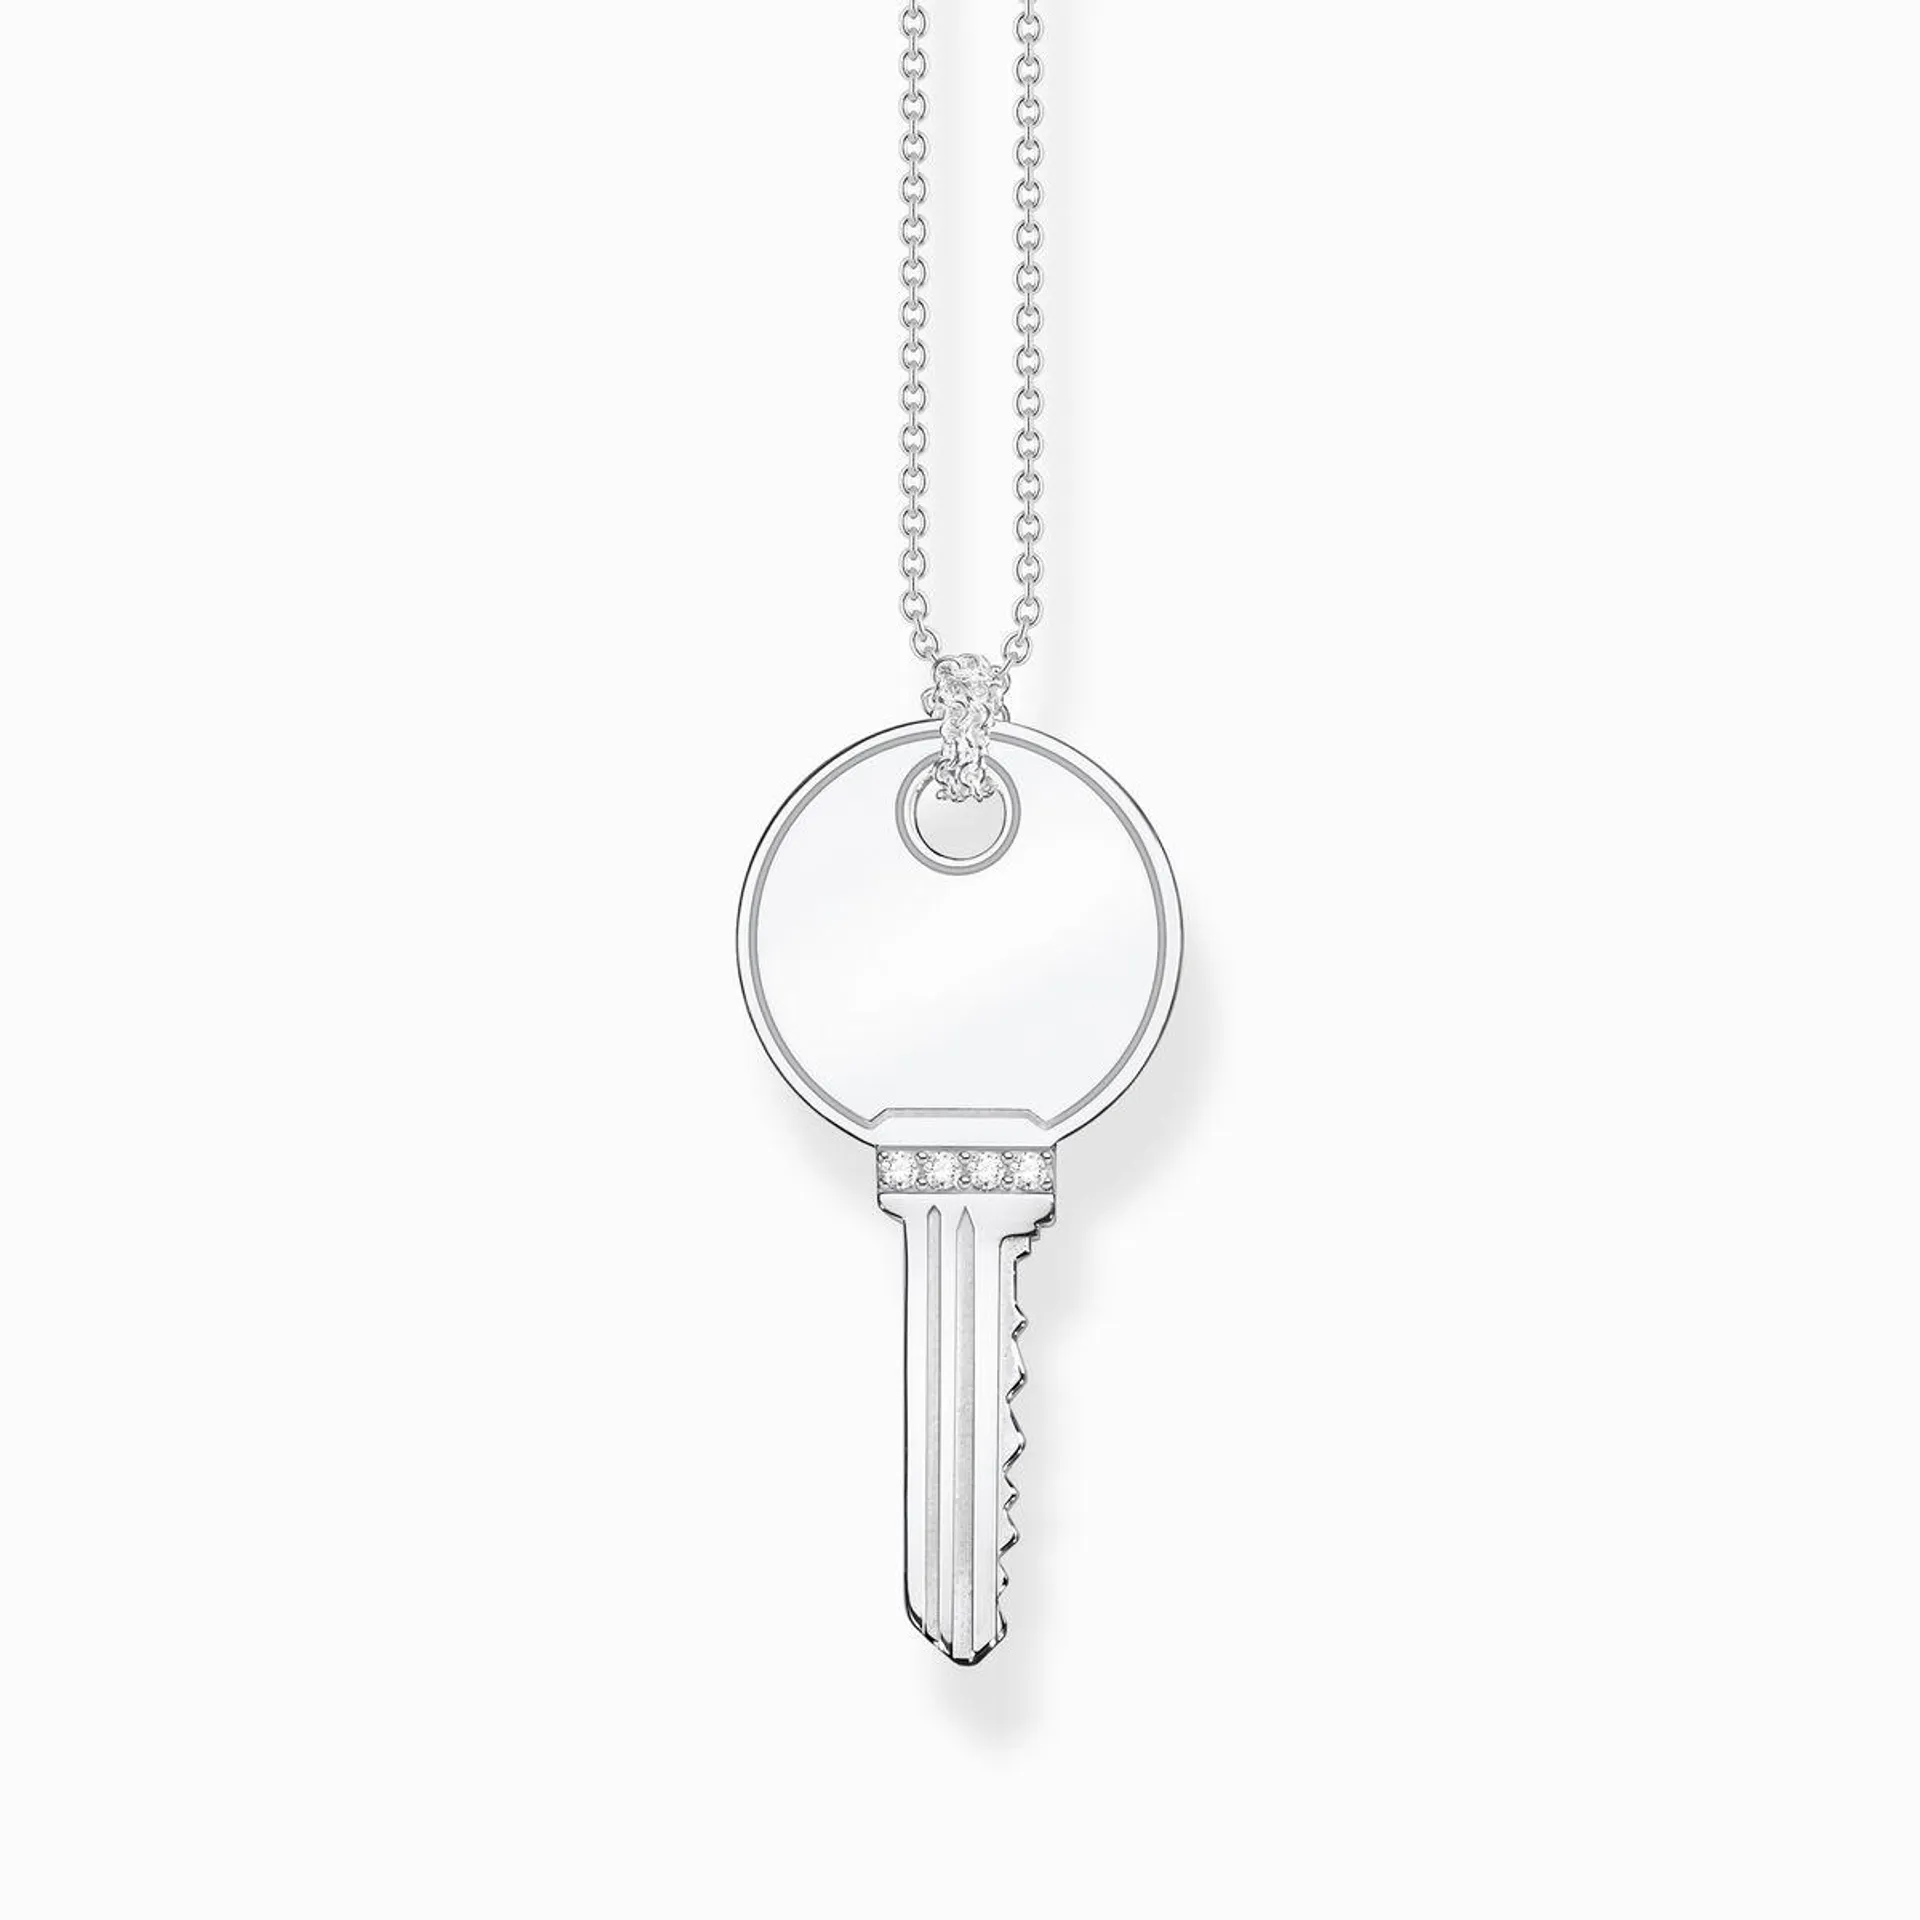 Necklace keys silver